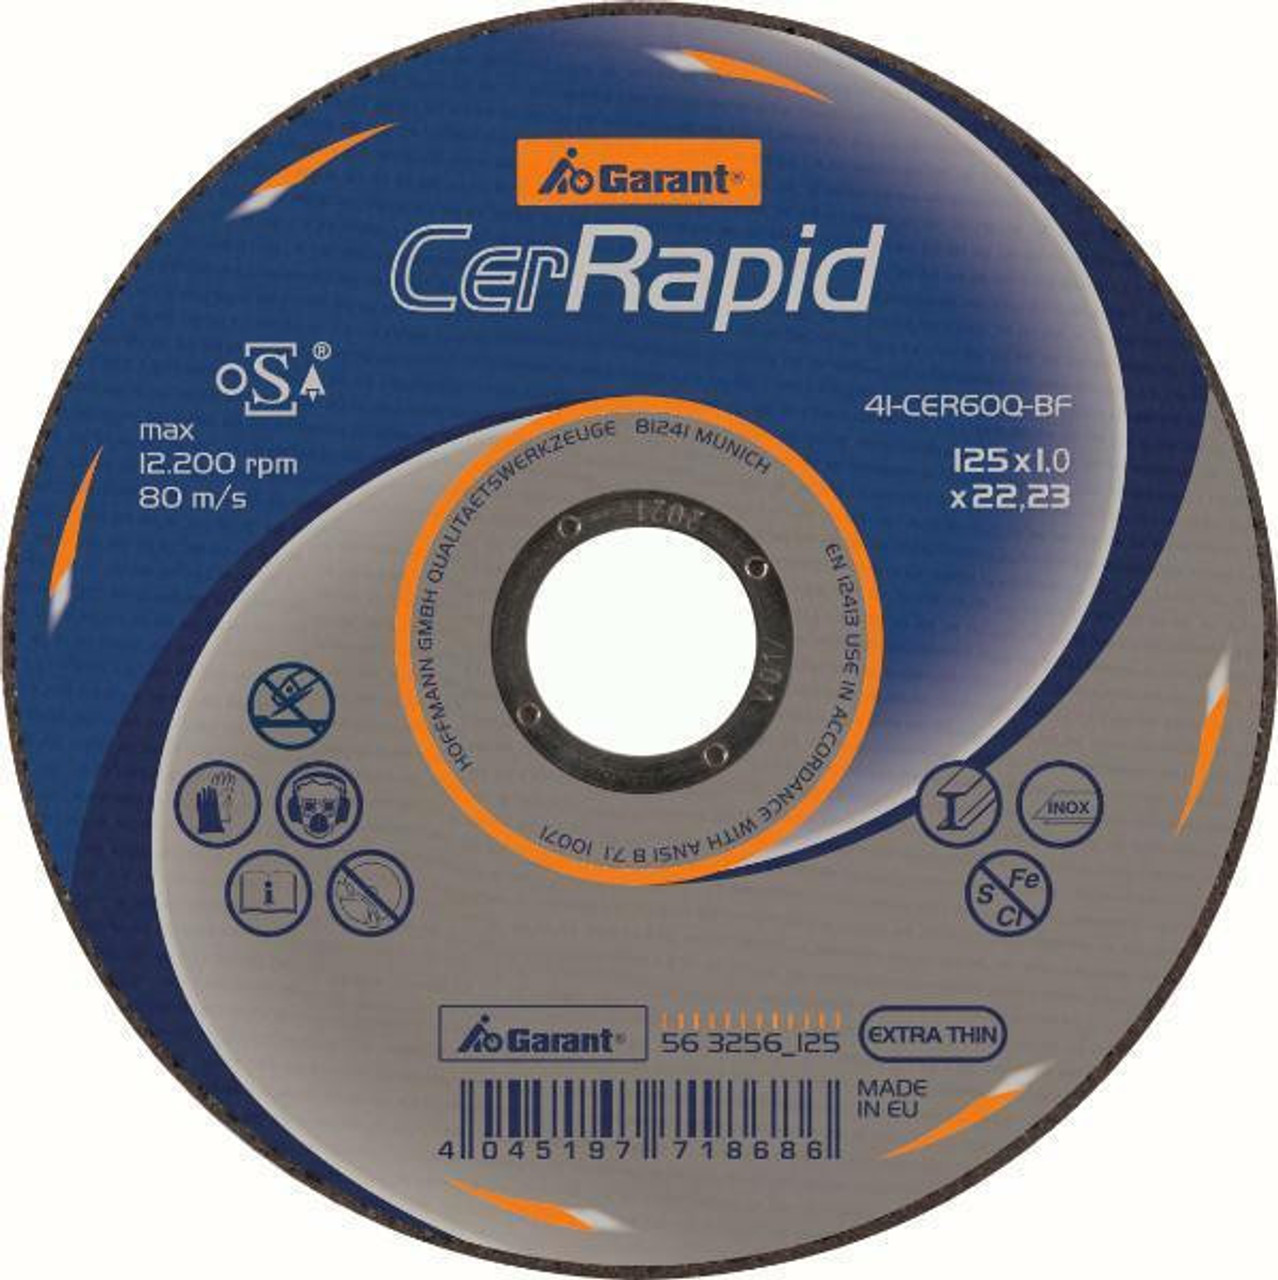 Garant CerRapid Ceramic Grit Cutting Discs Price Per Unit Garant Tools 563256